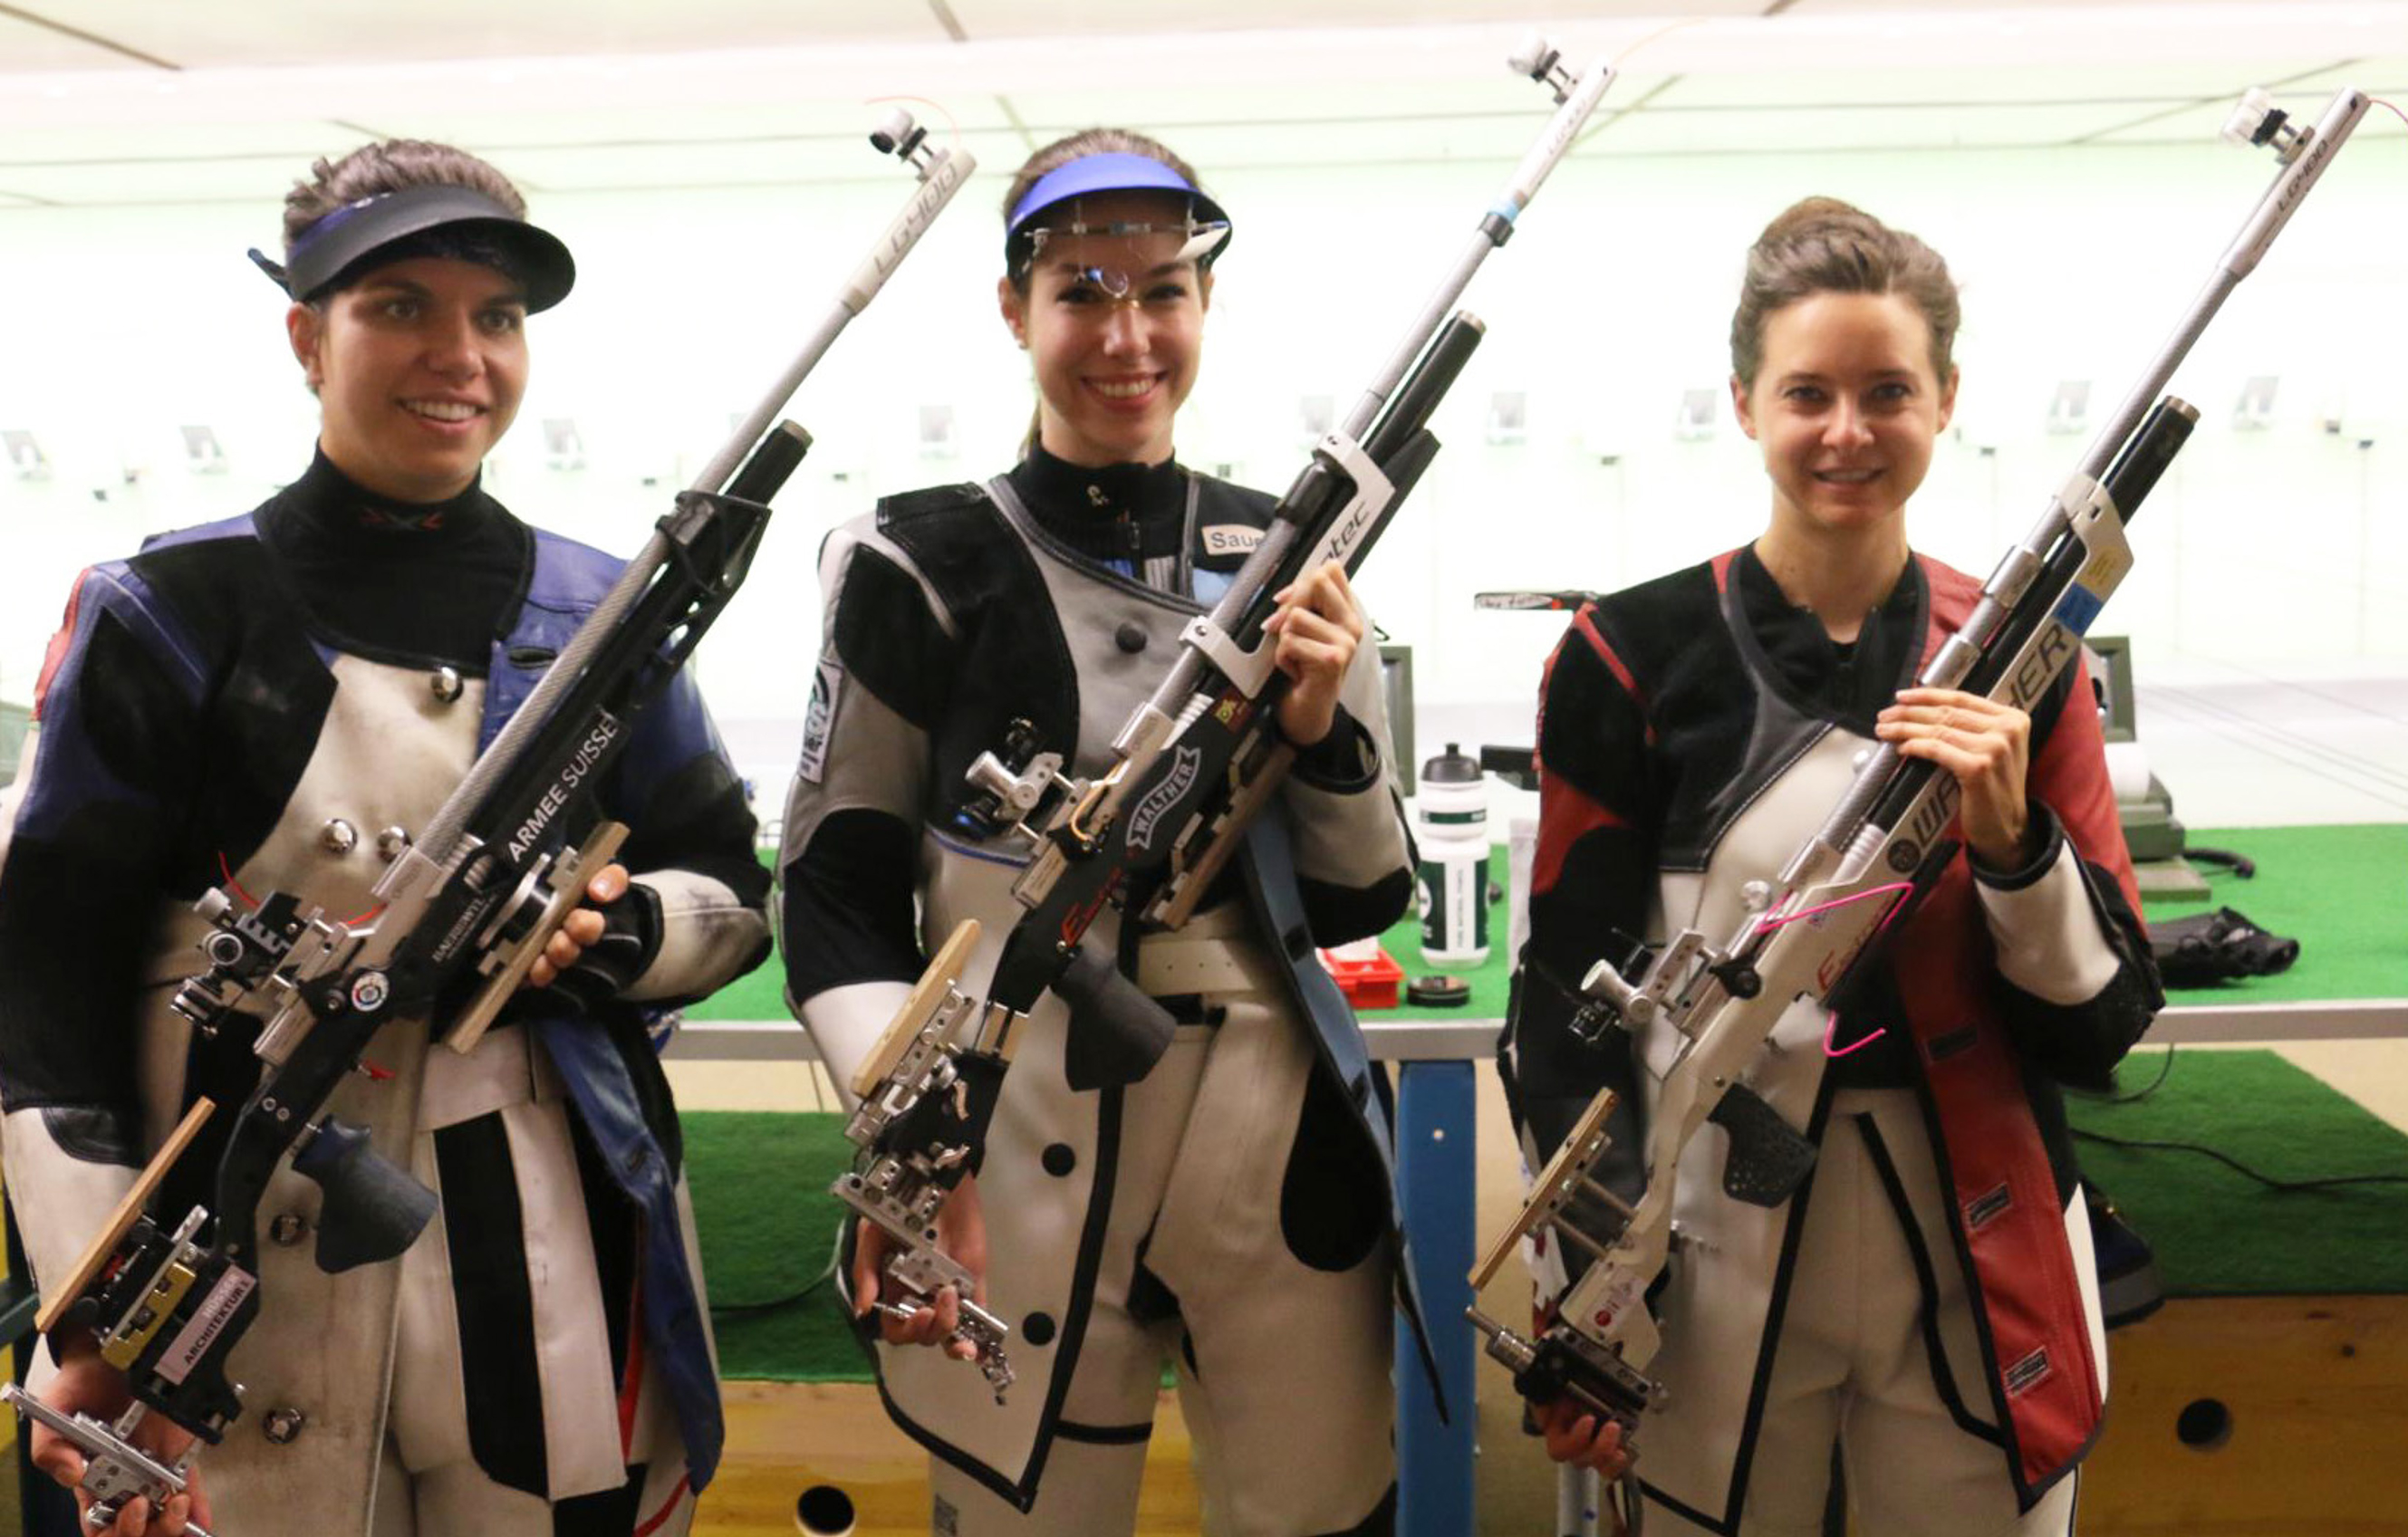 Siegerin Sara Lechner aus Bayern, eingerahmt von den beiden Schweizerinnen Chiara Leone (3., links) und Petra Lustenberger als Zweite.